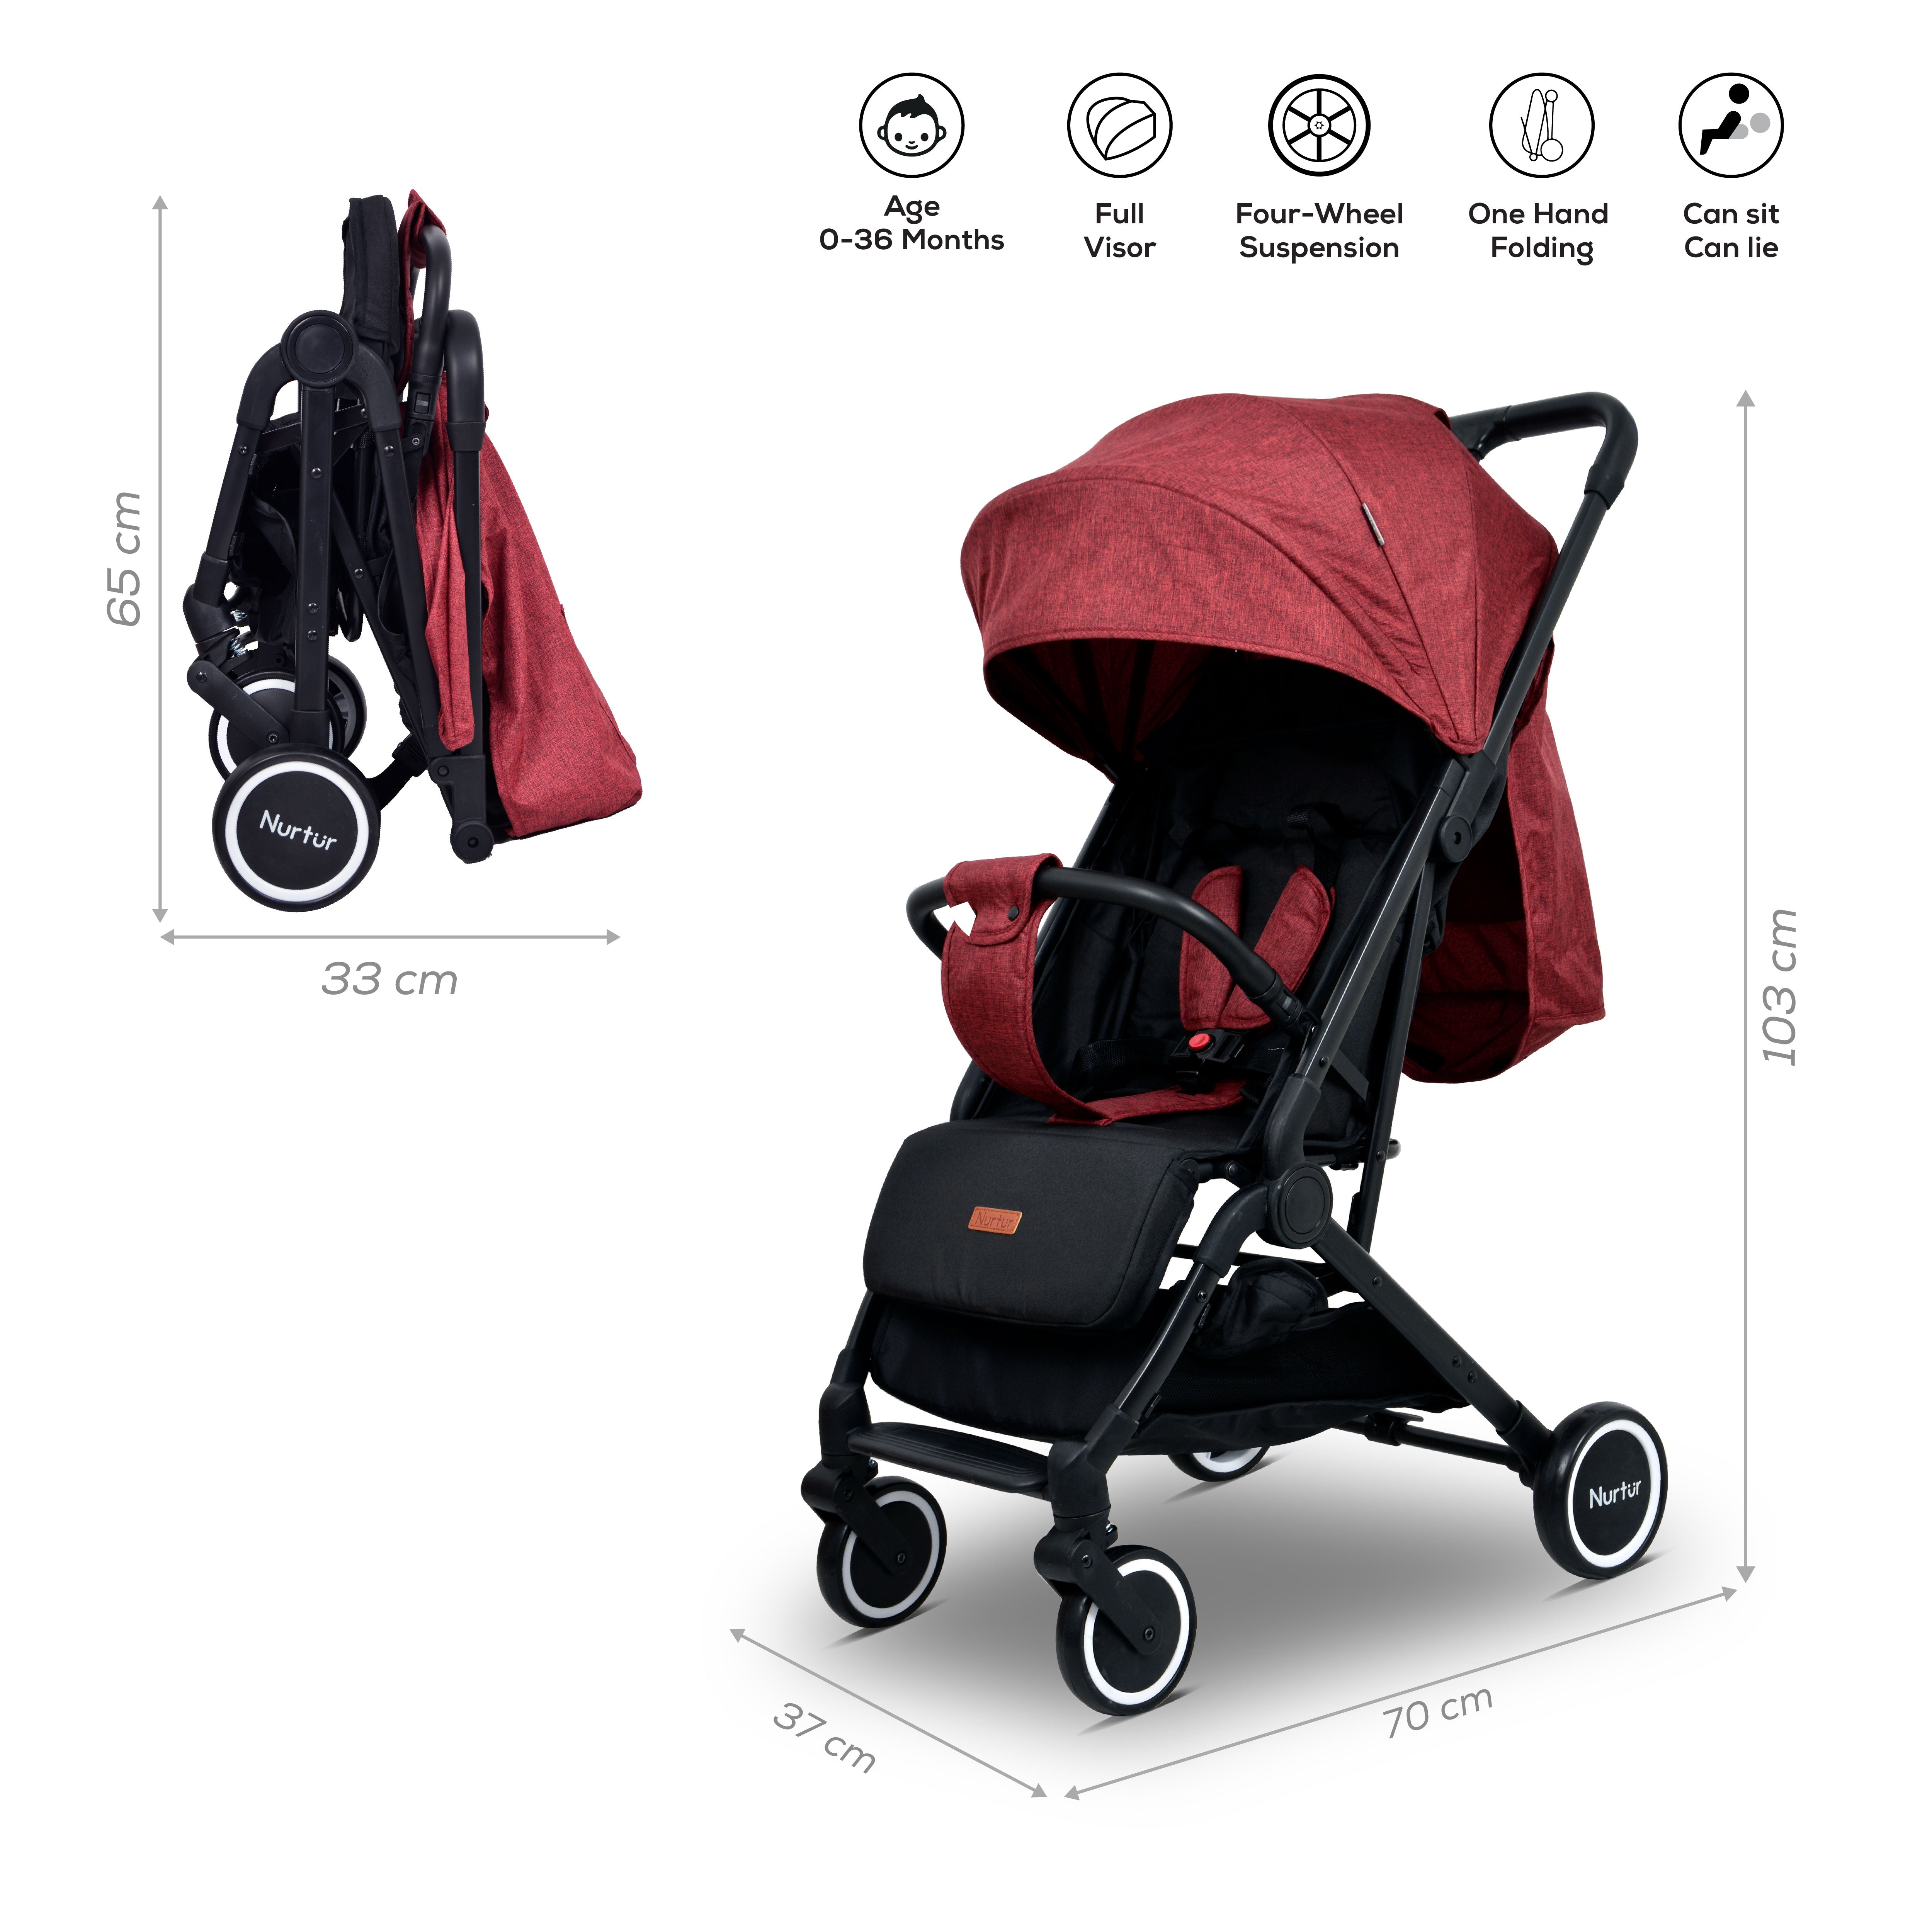 Nurtur - Bravo Travel Stroller (Red)